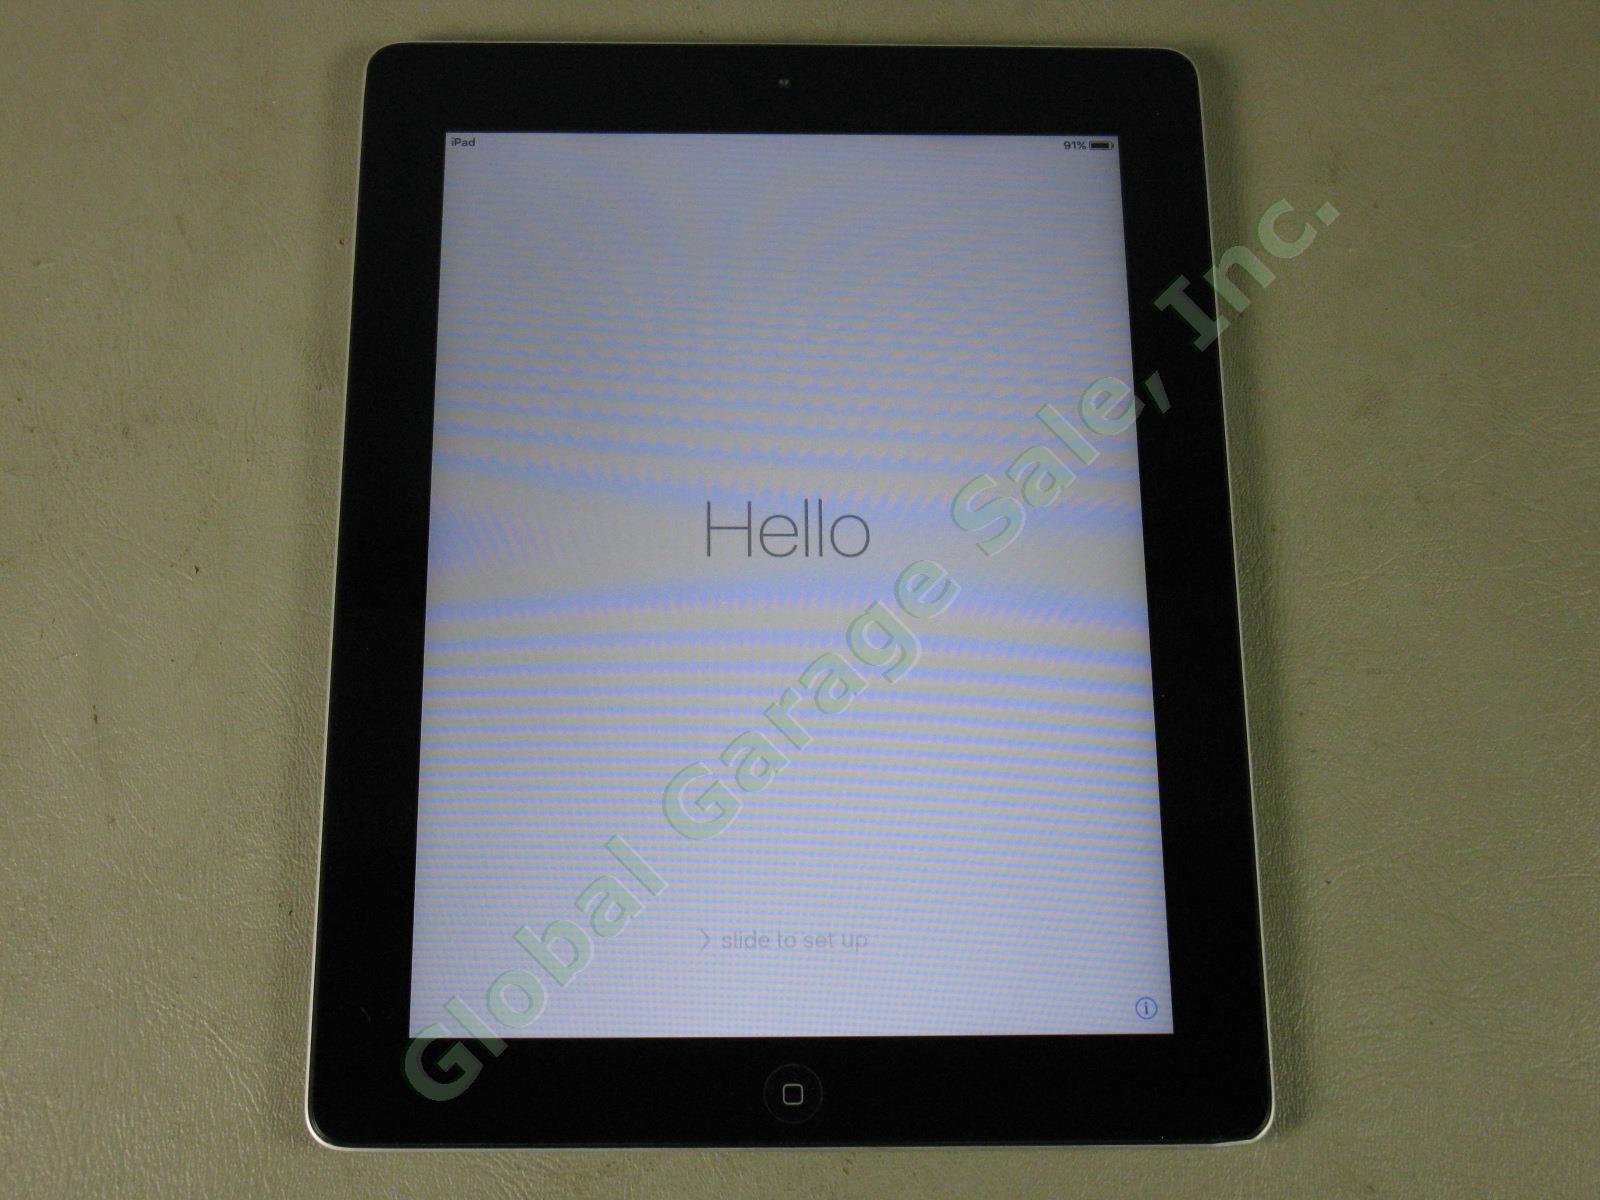 Apple iPad 2 Wifi 32GB Black Tablet Factory Reset MC770LL/A A1395 No Reserve!